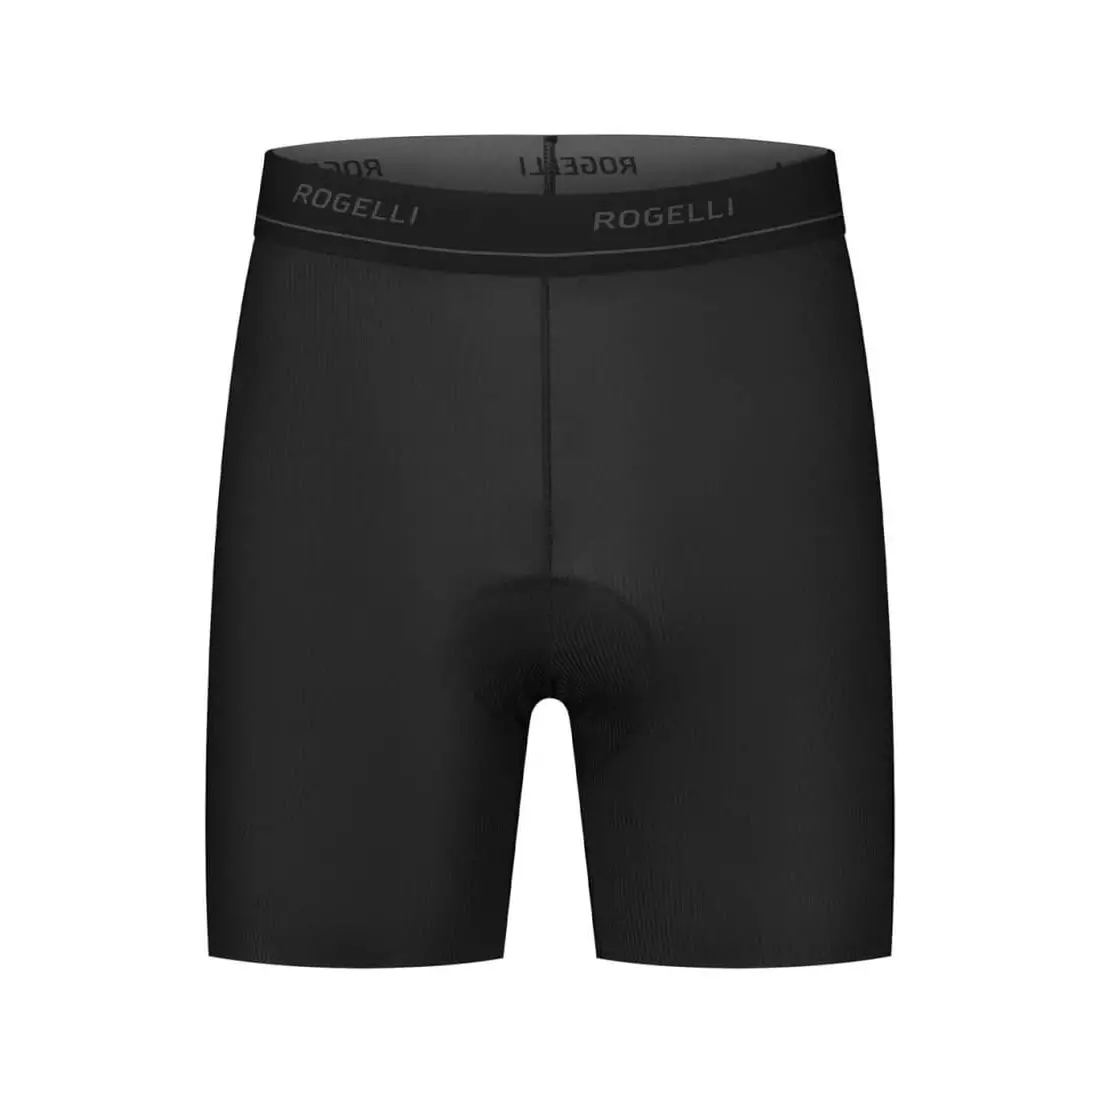 Rogelli PRIME pánské cyklistické boxerky s vycpávkou, černá